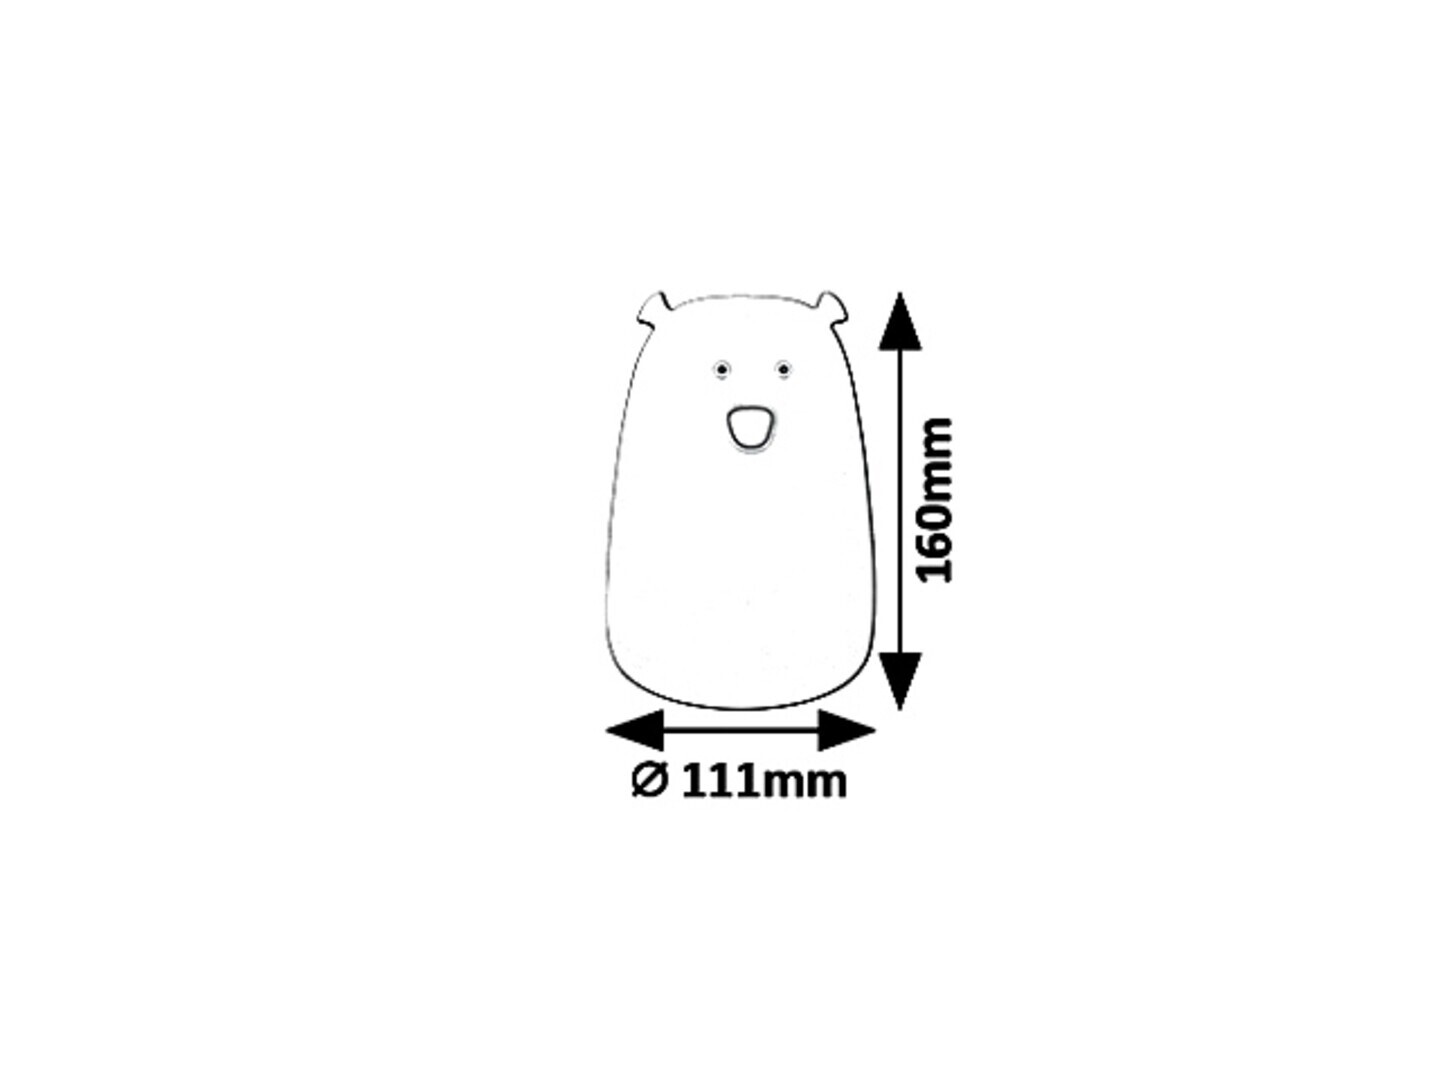 Dekoleuchte Baloo 5409, 0,4W, 3000K, 29lm, Silikon, weiß, rund, warmweiß-rgb, Innen, ø111mm